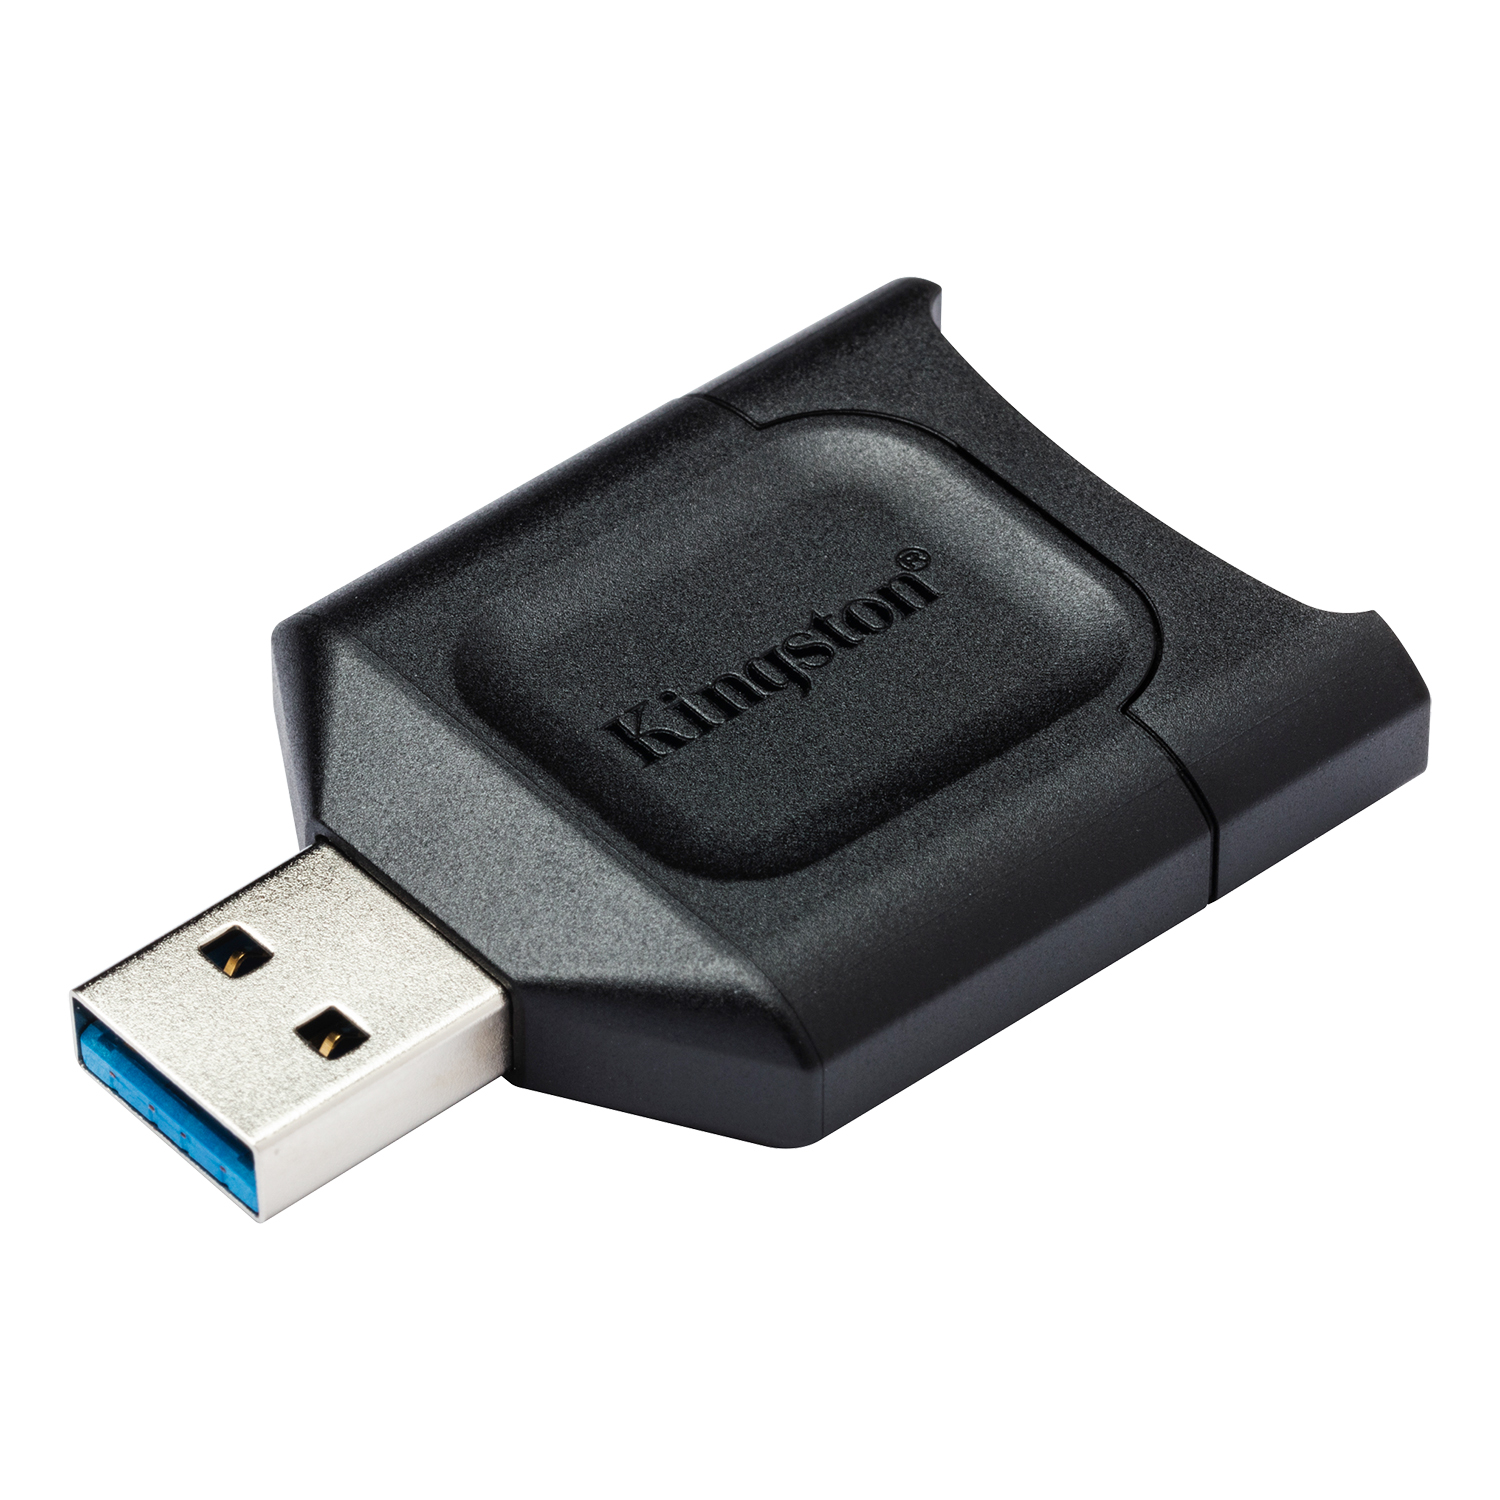 Kingston MobileLite Plus USB 3.1 SDHC/SDXC UHS-II